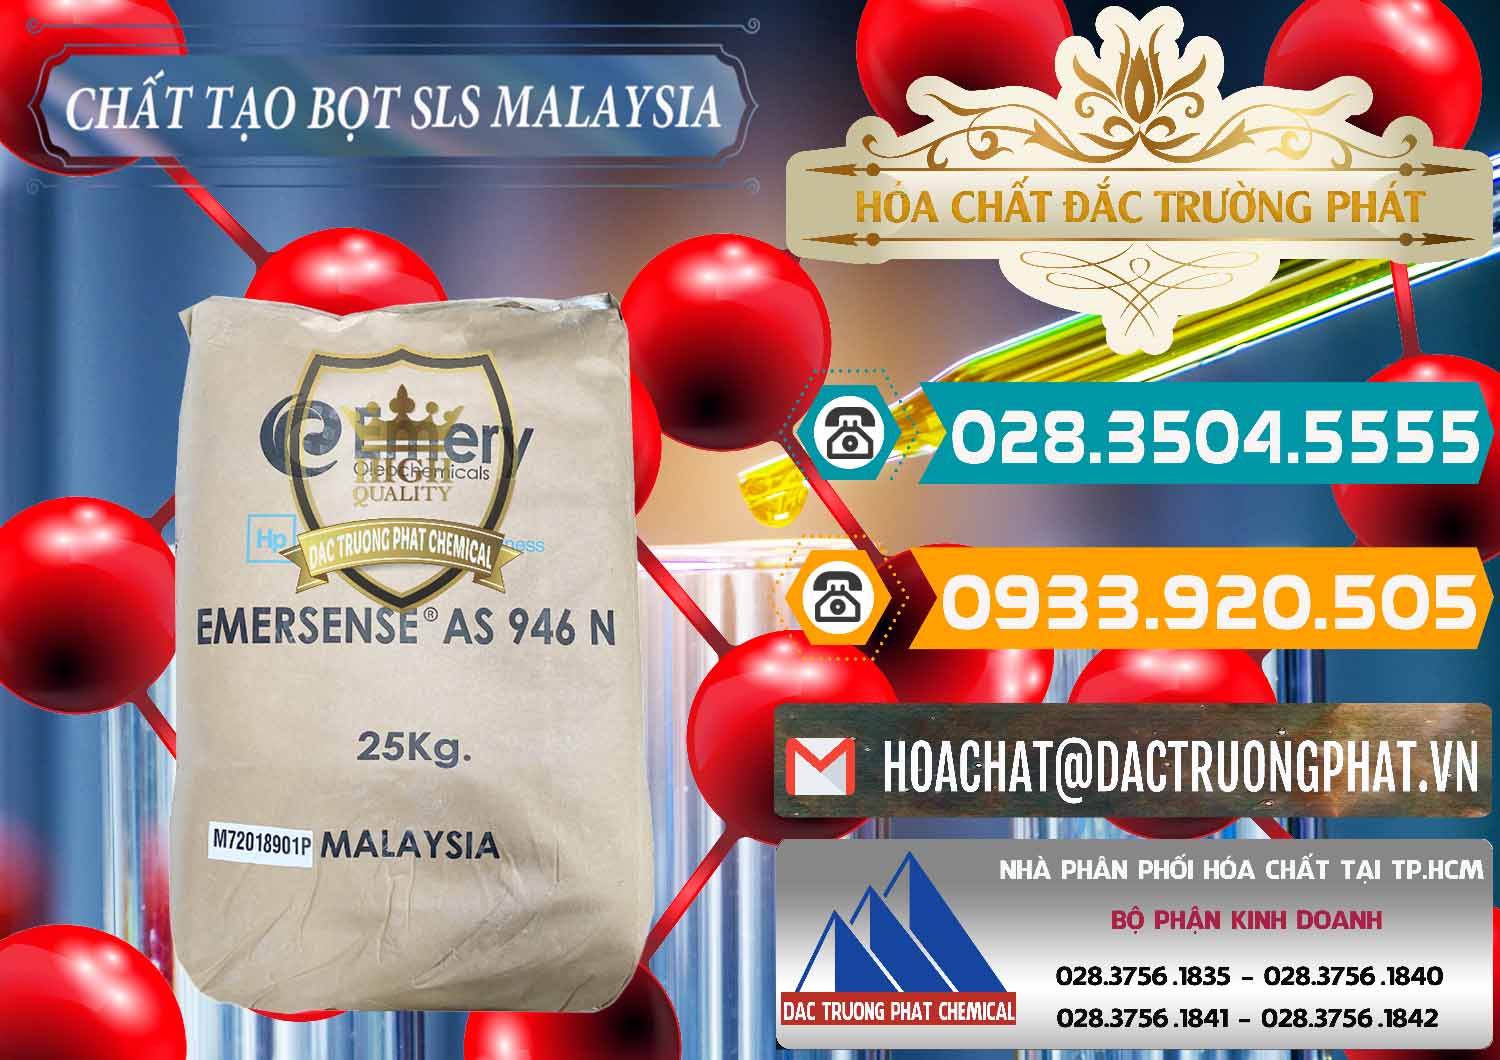 Chuyên bán và cung ứng Chất Tạo Bọt SLS Emery - Emersense AS 946N Mã Lai Malaysia - 0423 - Nơi phân phối _ nhập khẩu hóa chất tại TP.HCM - congtyhoachat.vn